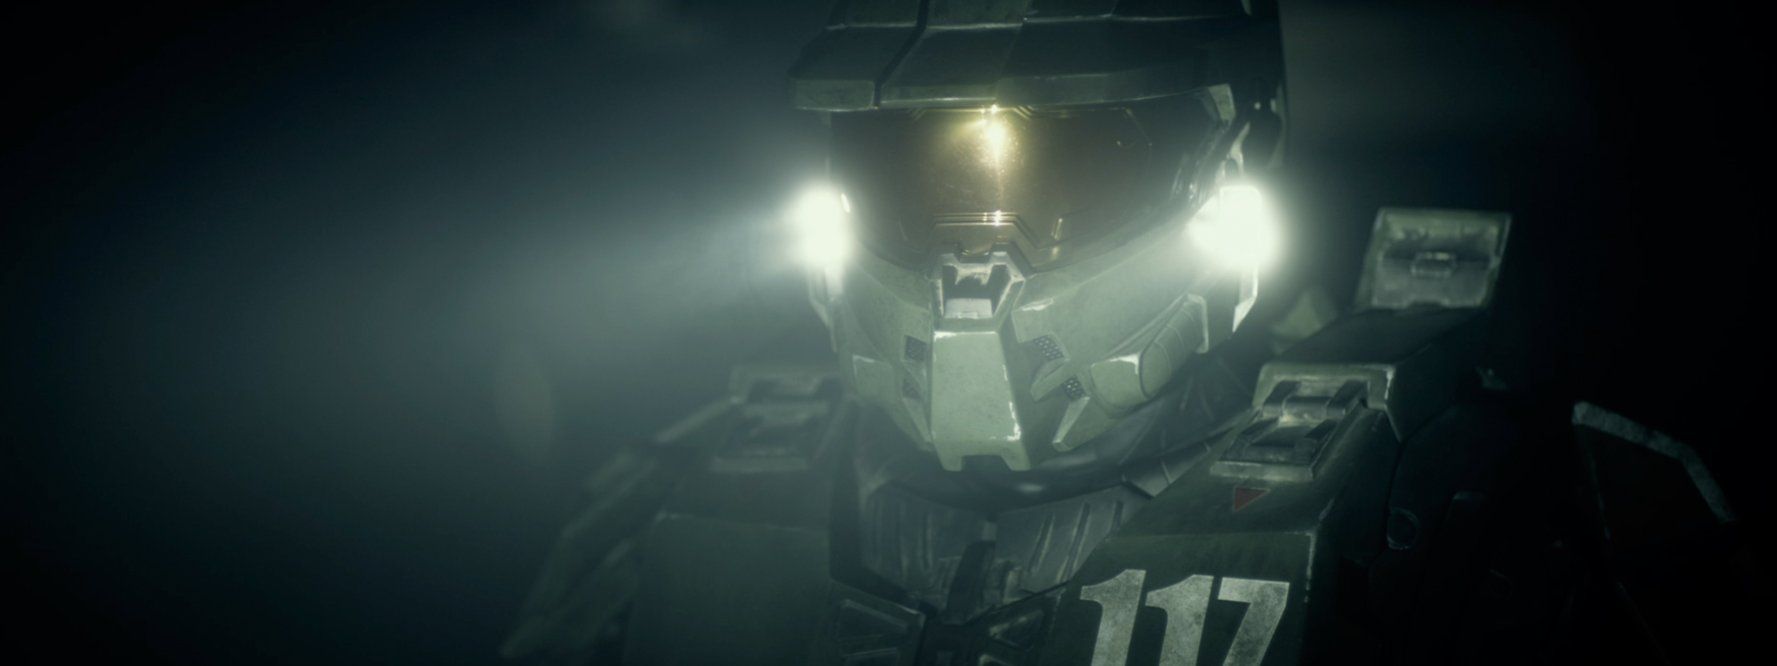 Halo 4 - Forward unto dawn - Film 1 - Blu-Ray - Screenshot 5